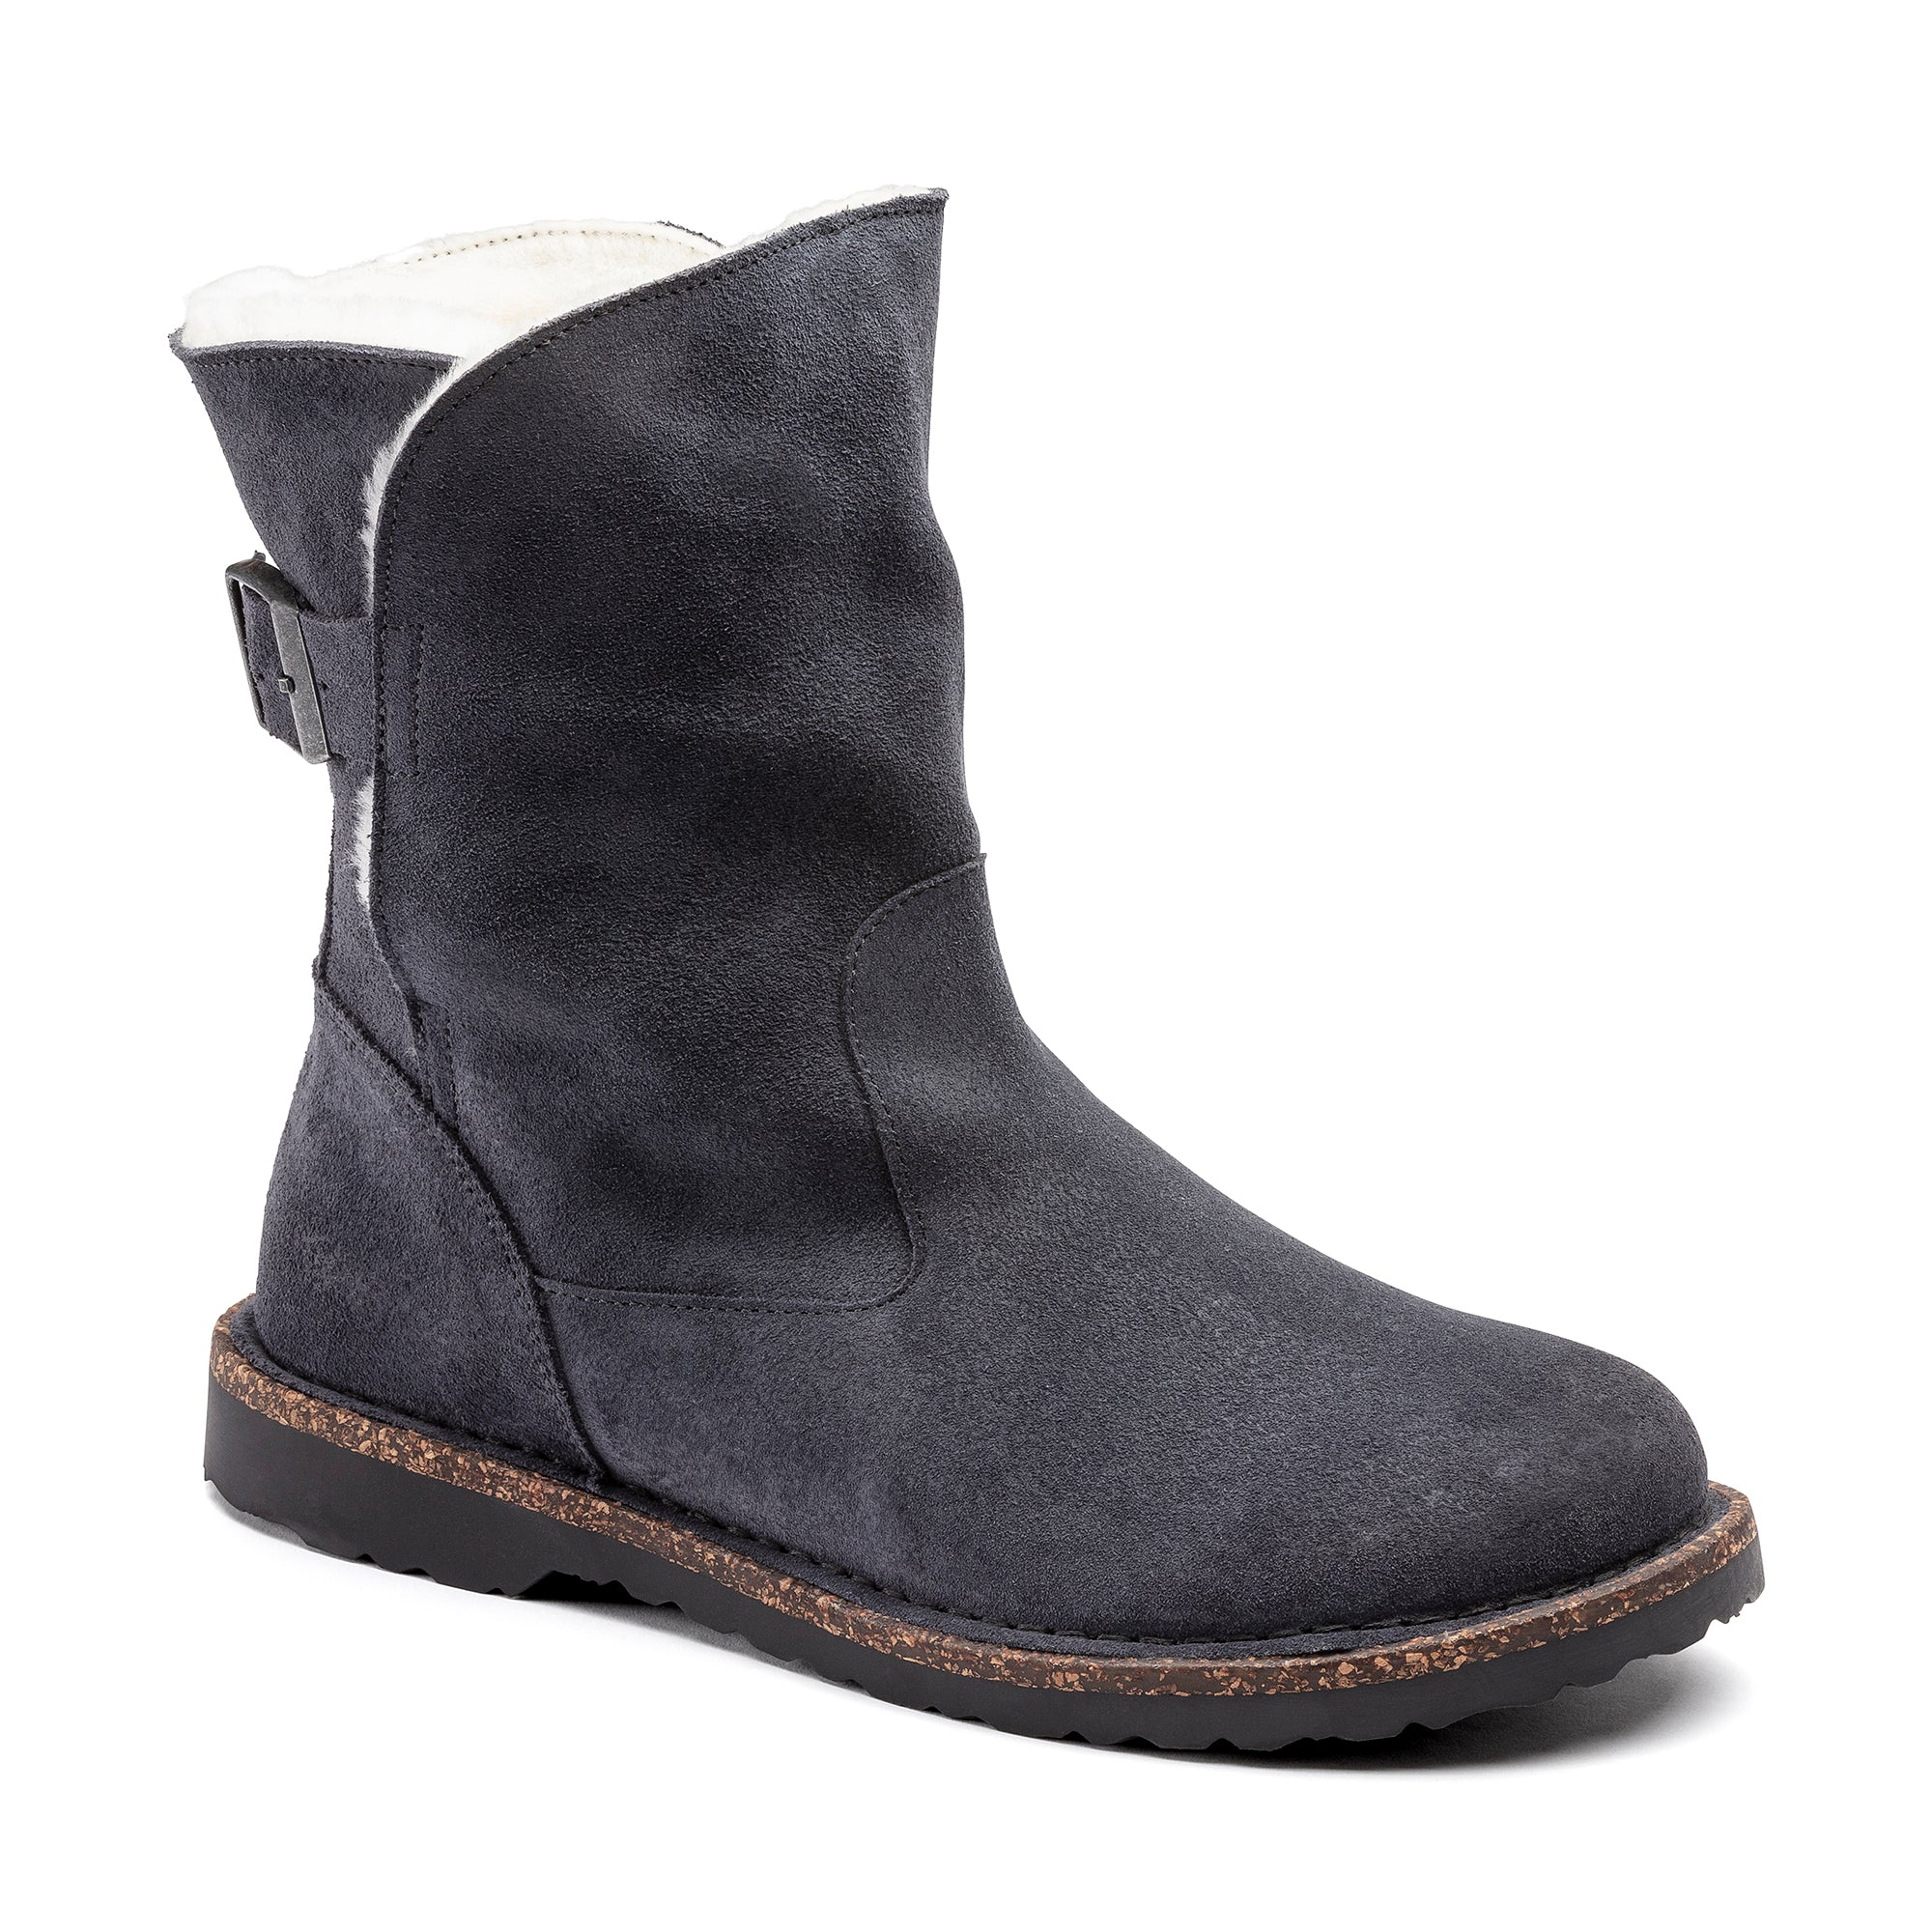 Birkenstock Uppsala Shearling Suede Leather Boots Women's